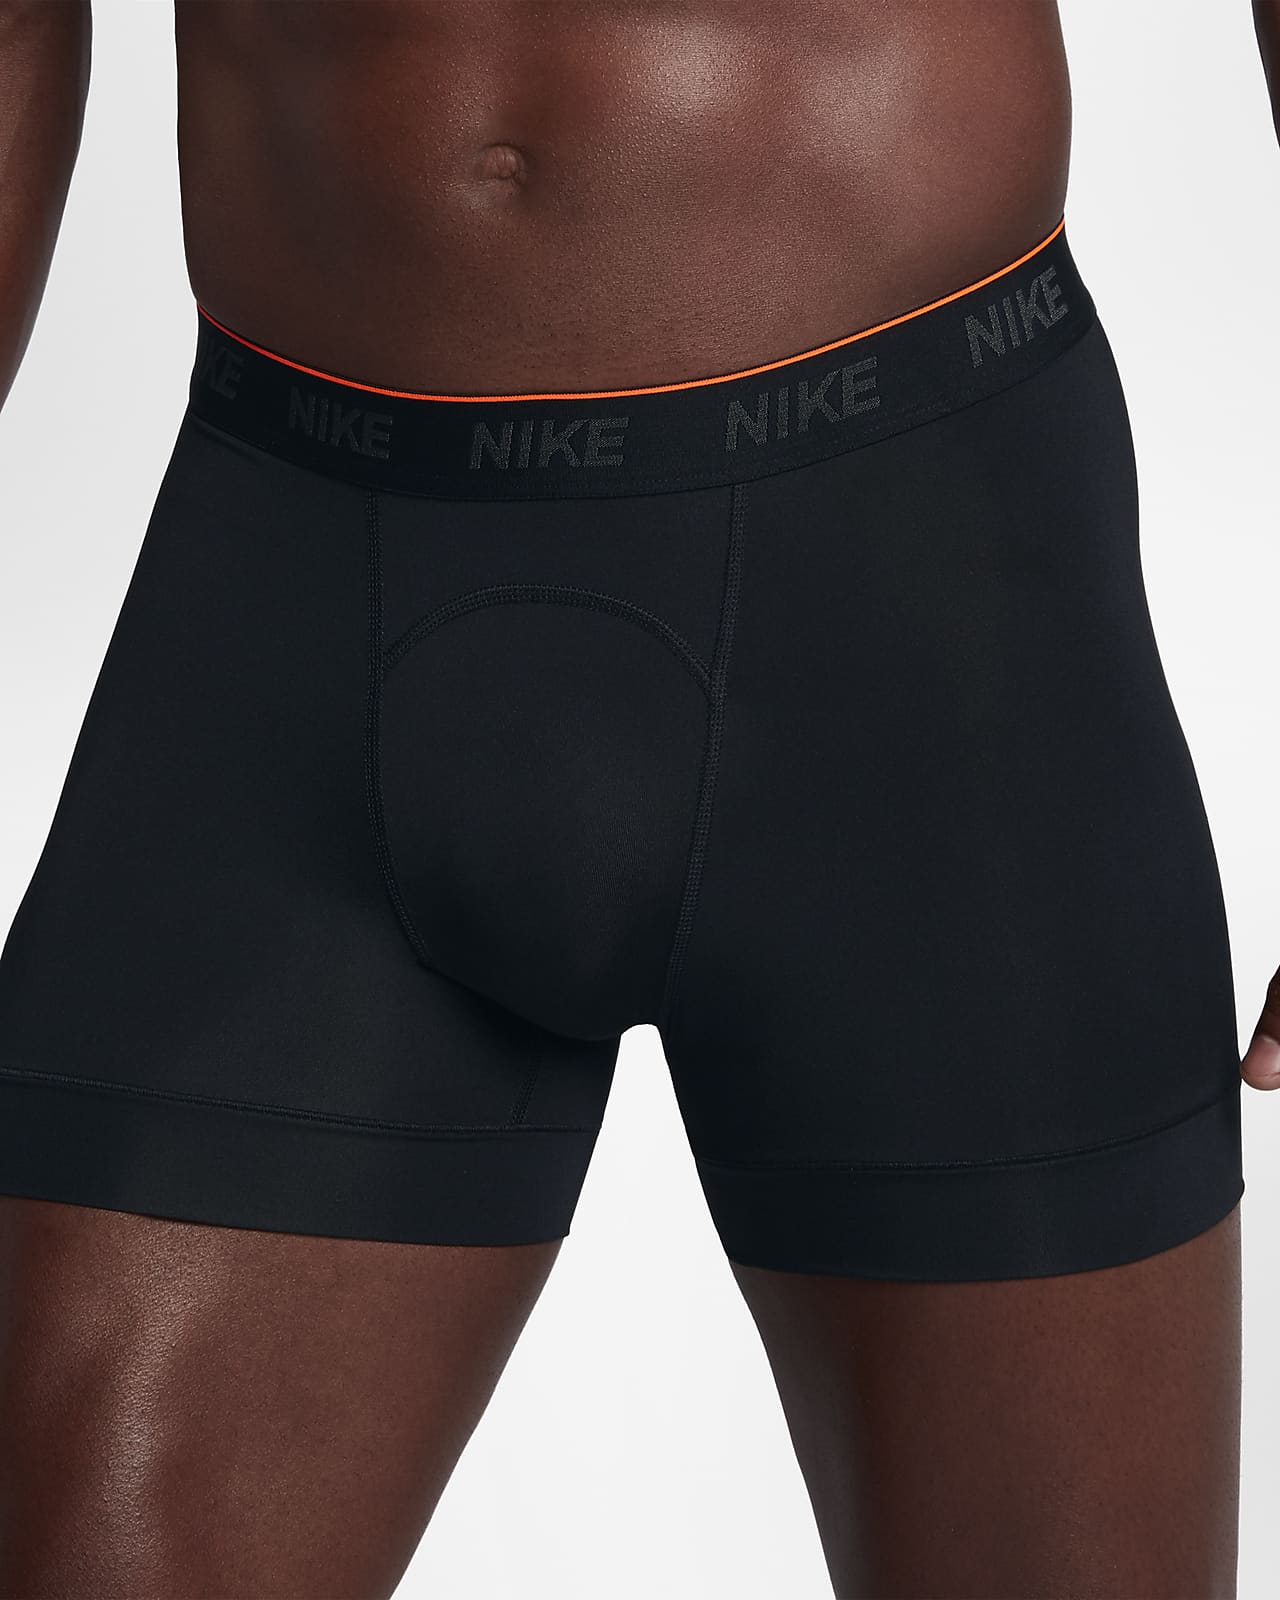 nike men's underwear